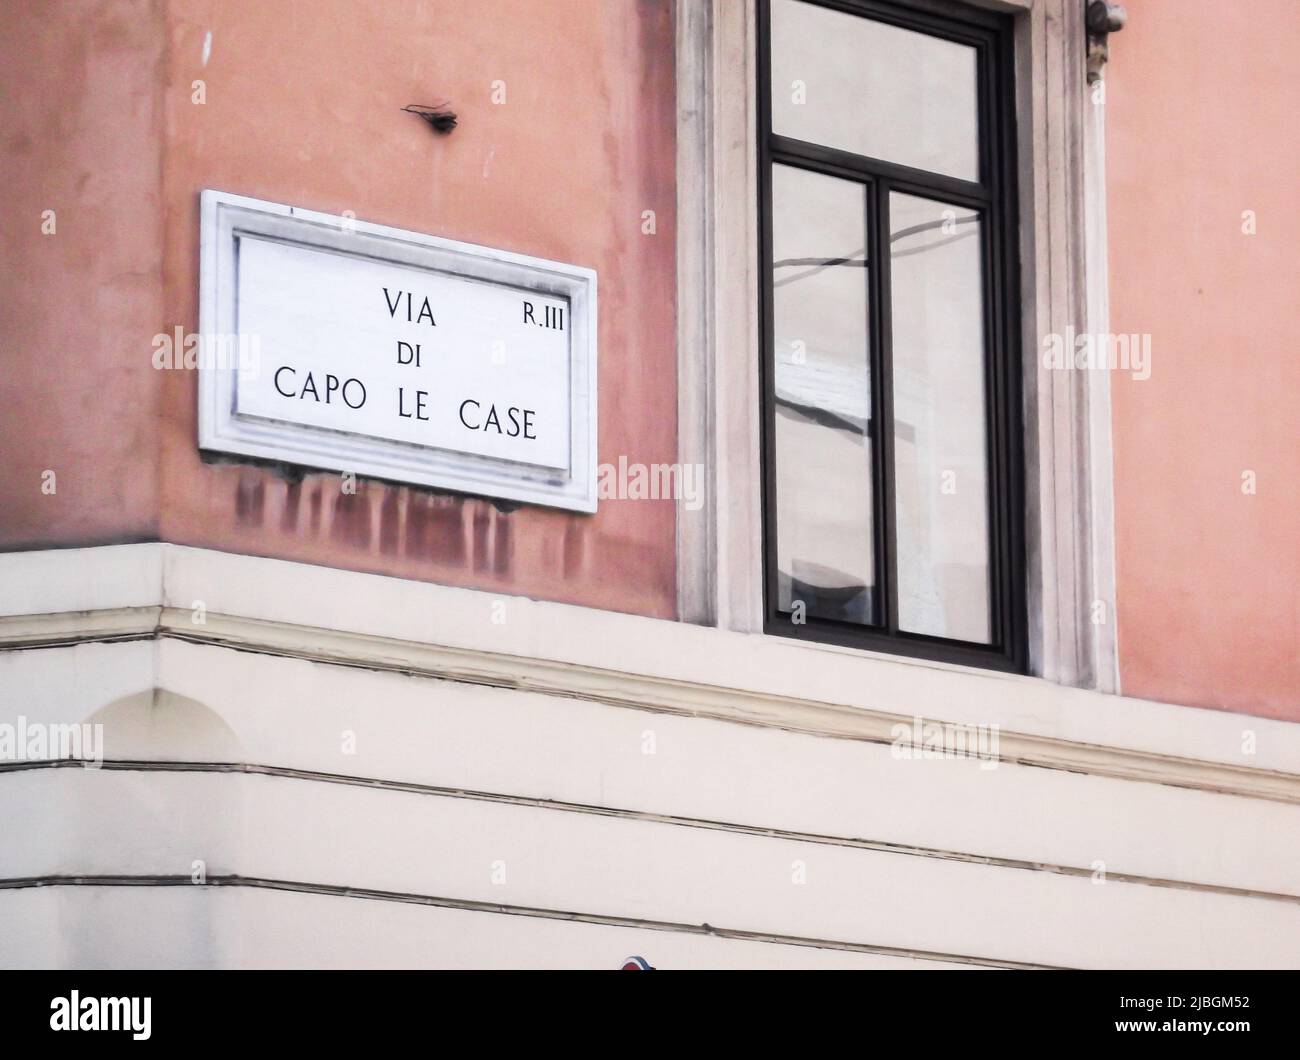 Address sign of Via di Capo le Case, Rome, Italy. Stock Photo